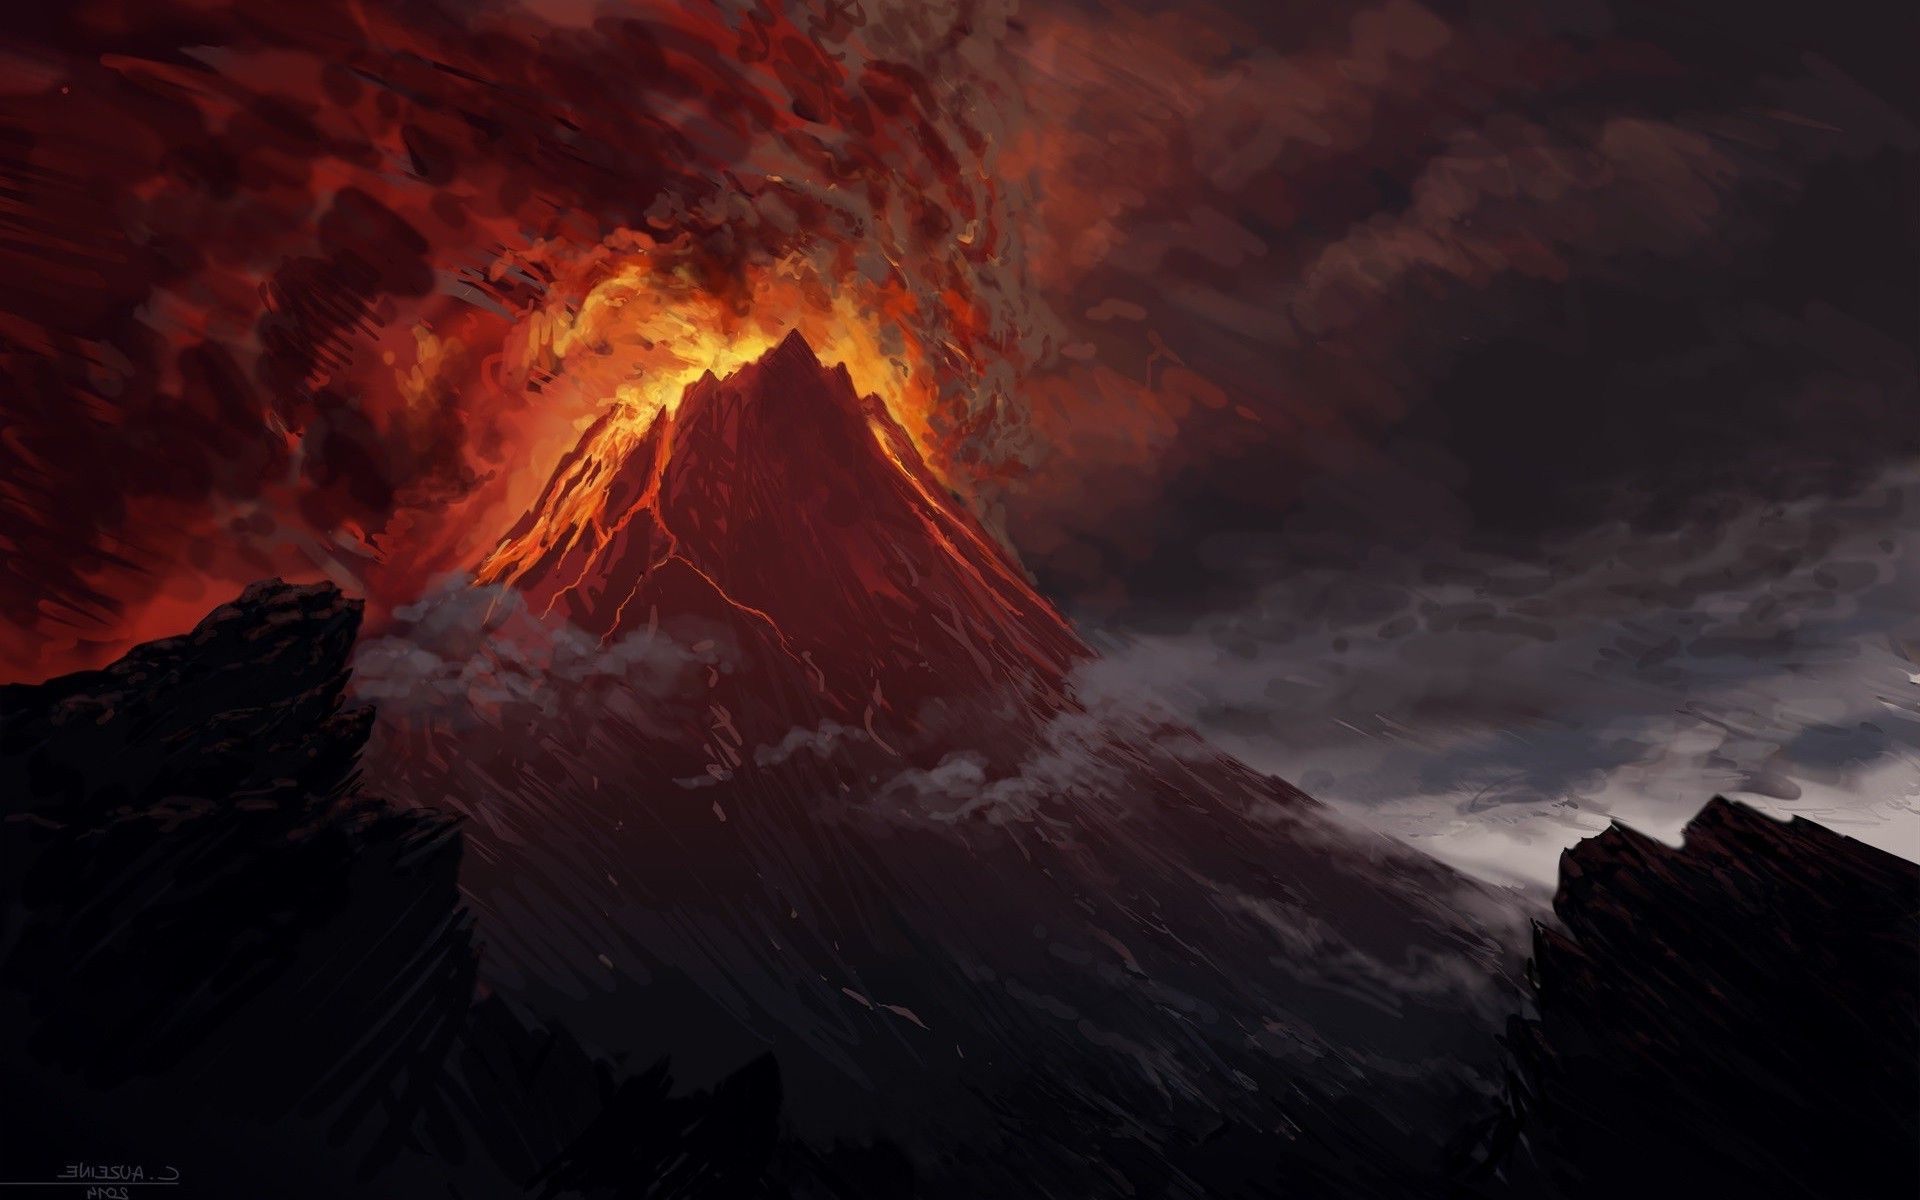 پس زمینه فوران مواد مذاب از درون کوه آتشفشانی فعال واقعی